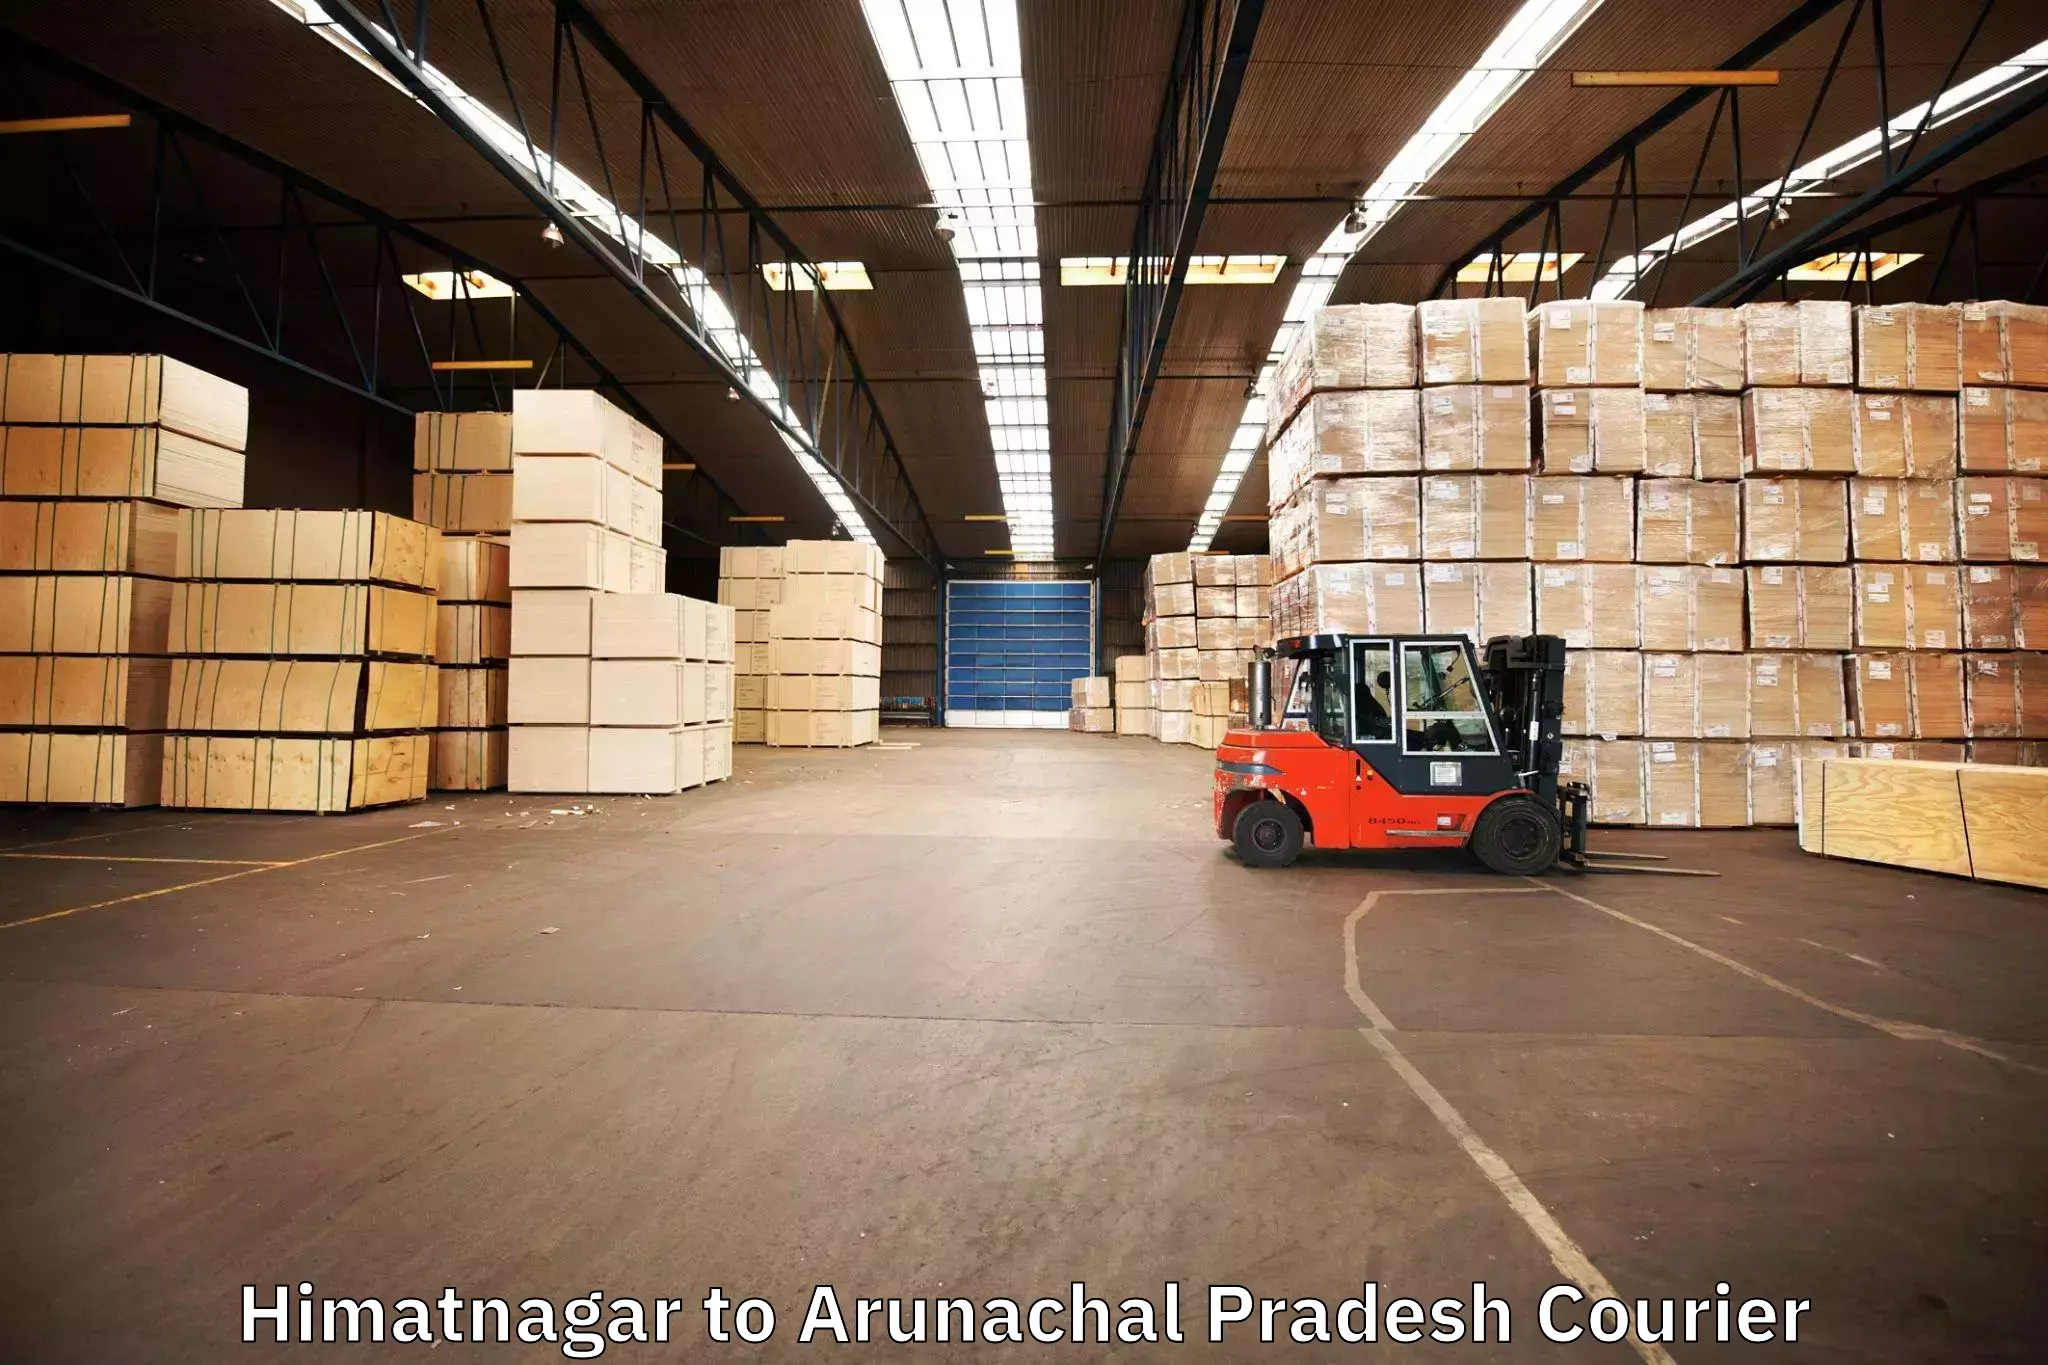 Furniture moving experts Himatnagar to Arunachal Pradesh